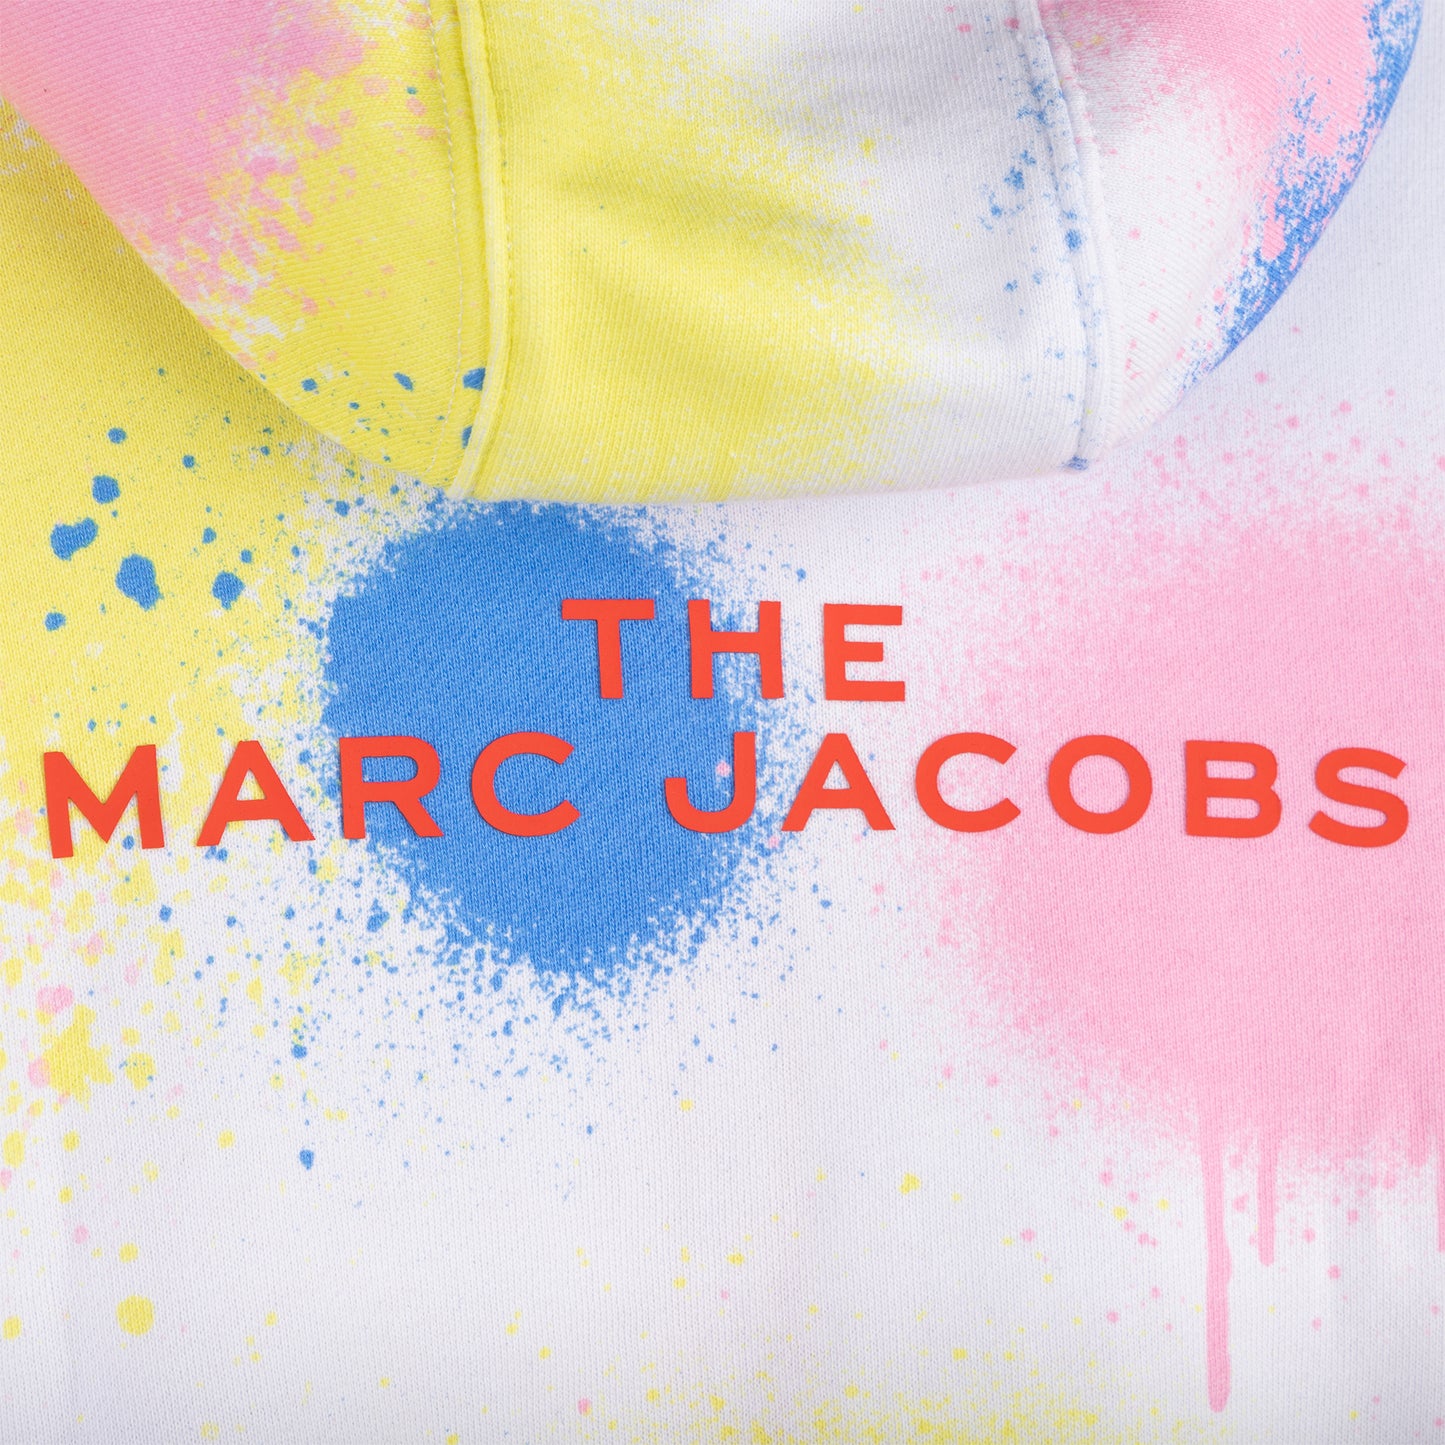 The Marc Jacobs Splash Paint Zip Sweatshirt